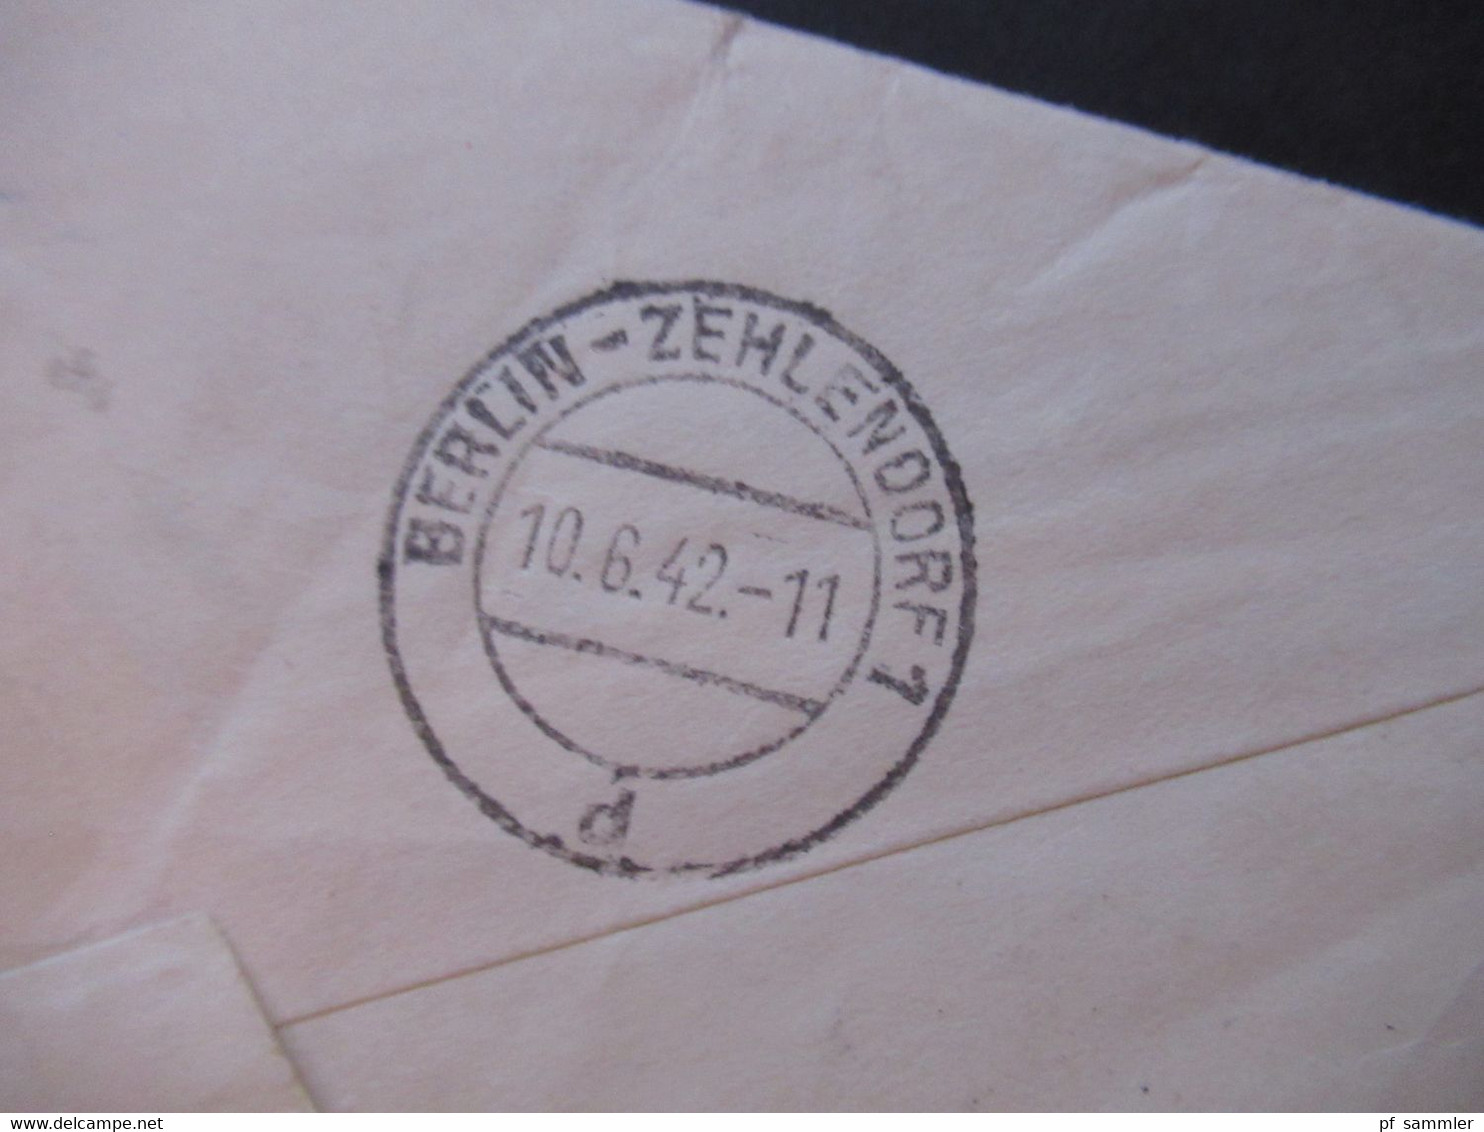 Portugal 1942 Zensurbeleg OKW Mehrfachzensur Einschreiben Lisboa - Berlin mit Luftpost / Flugpostmarke Nr. 594 MiF